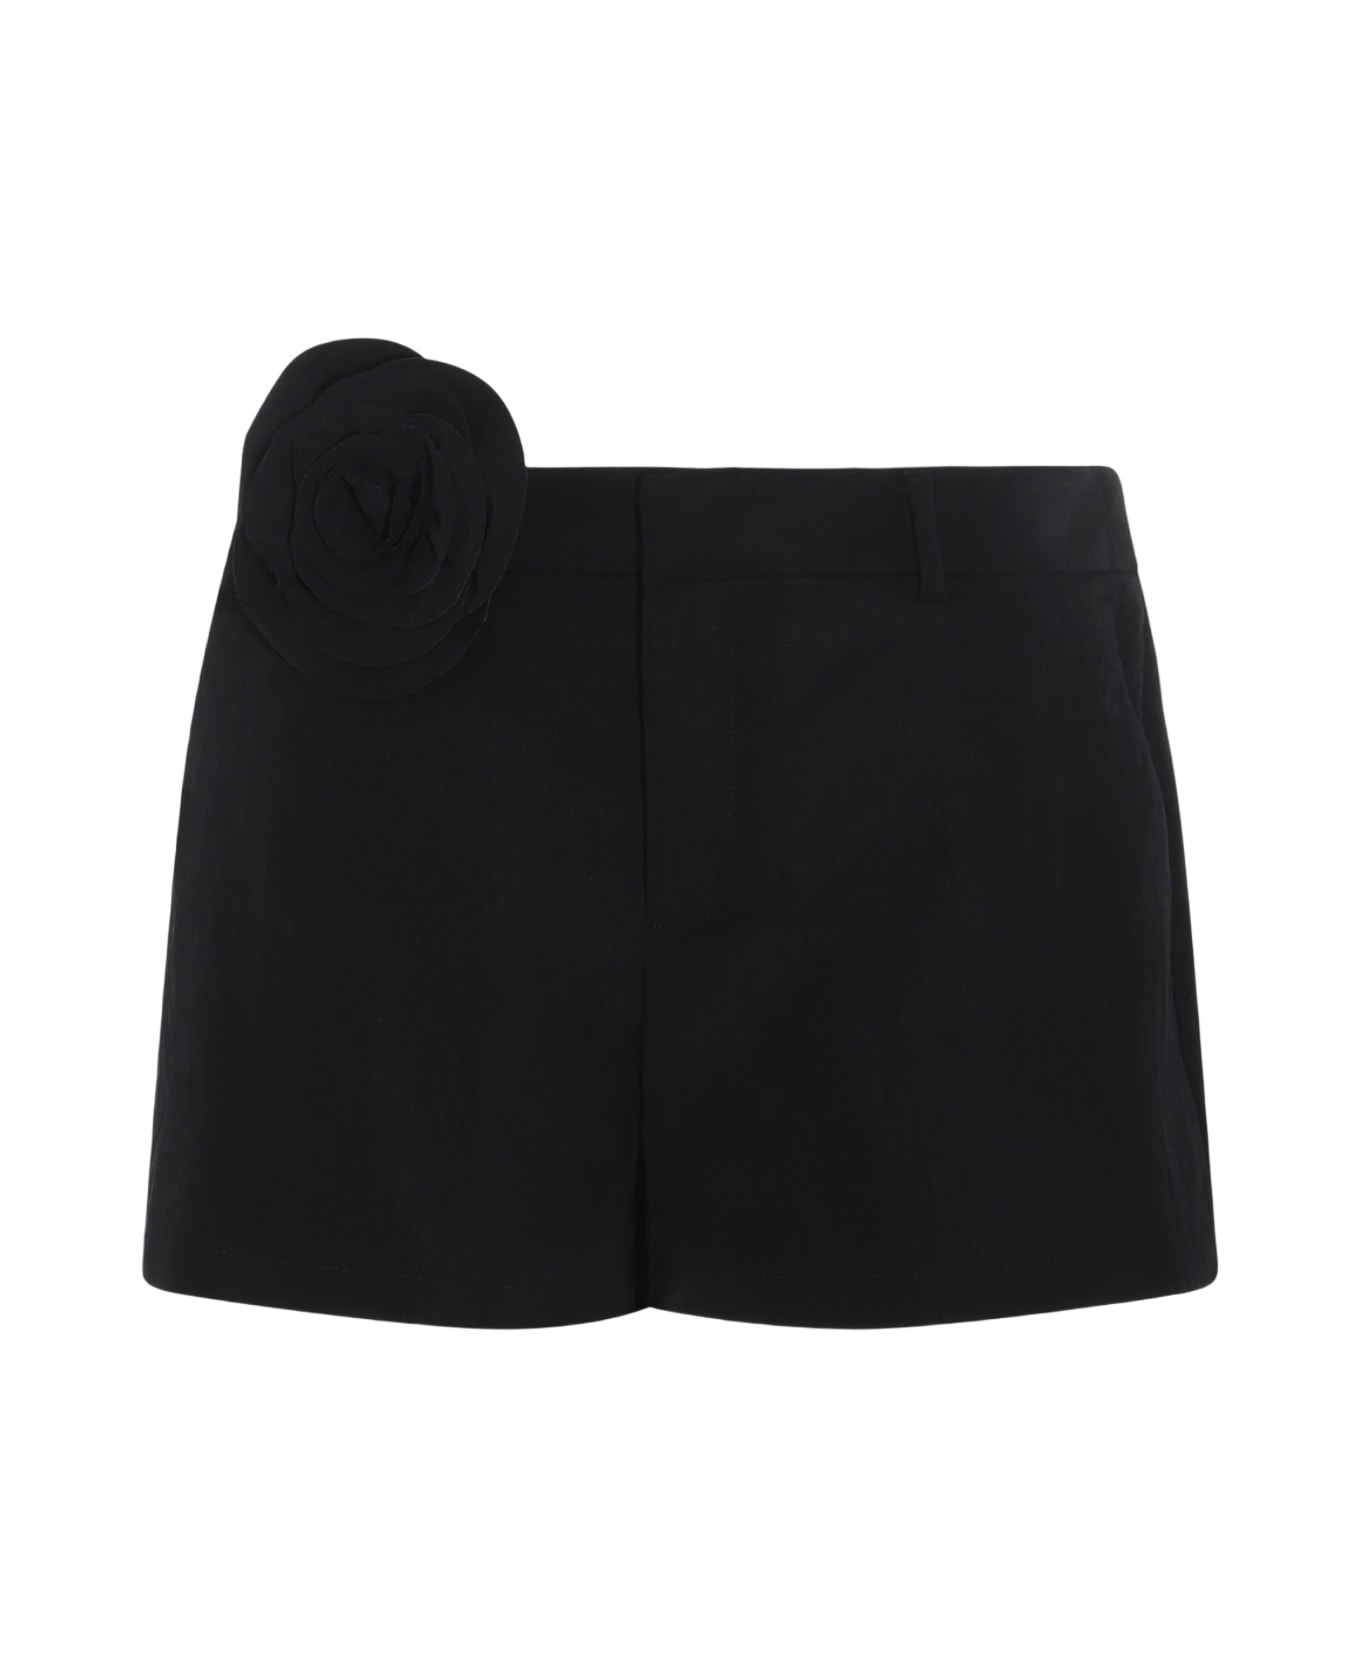 Blumarine Black Shorts - Black ショートパンツ